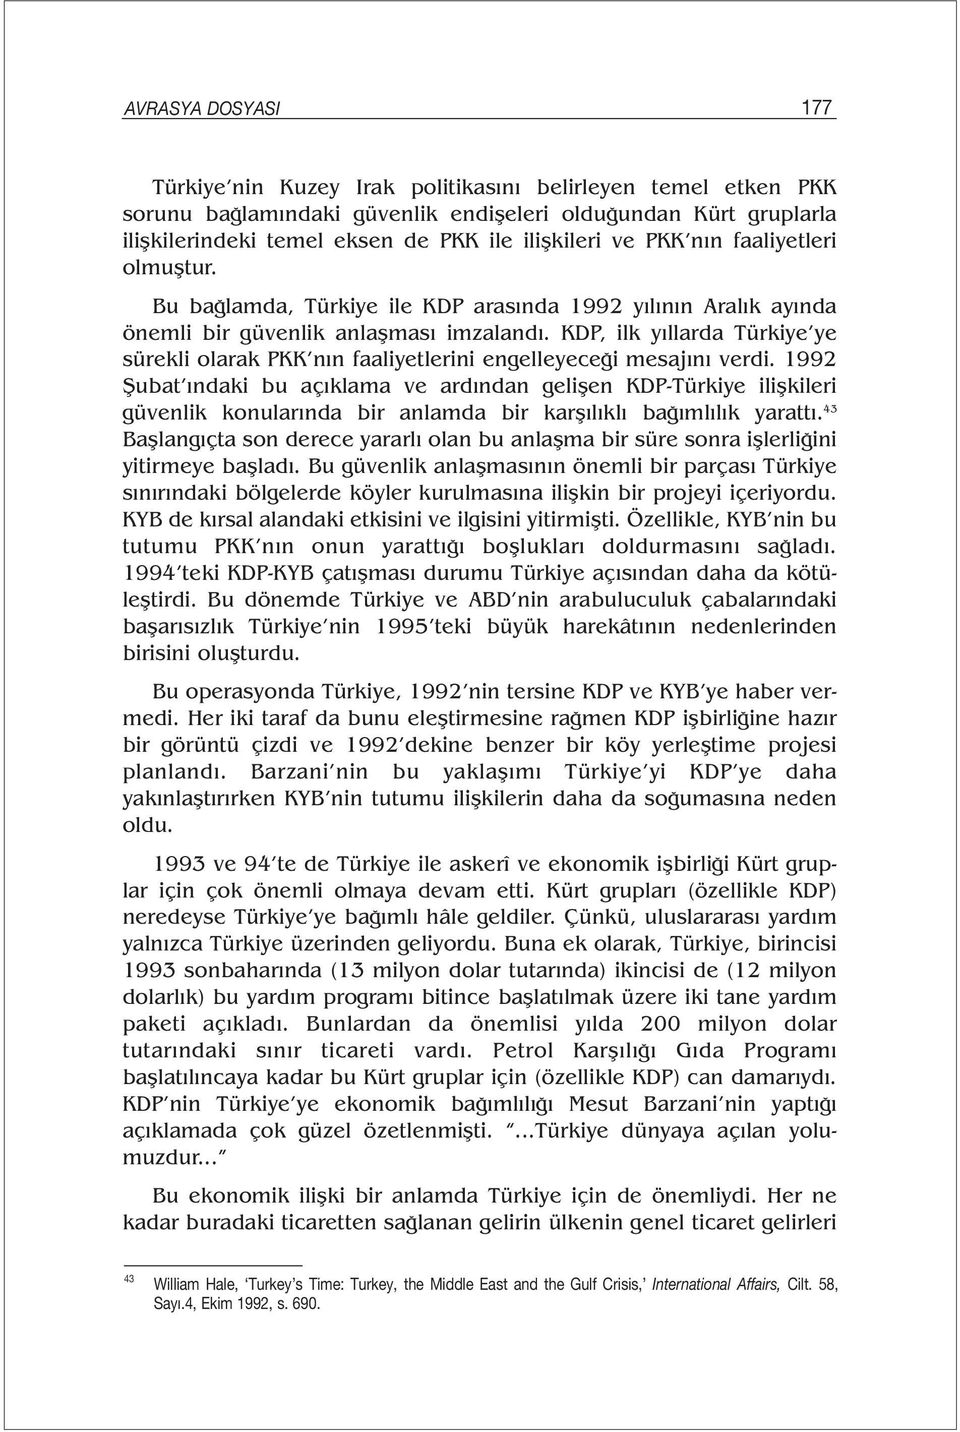 KDP, ilk yıllarda Türkiye ye sürekli olarak PKK nın faaliyetlerini engelleyeceği mesajını verdi.